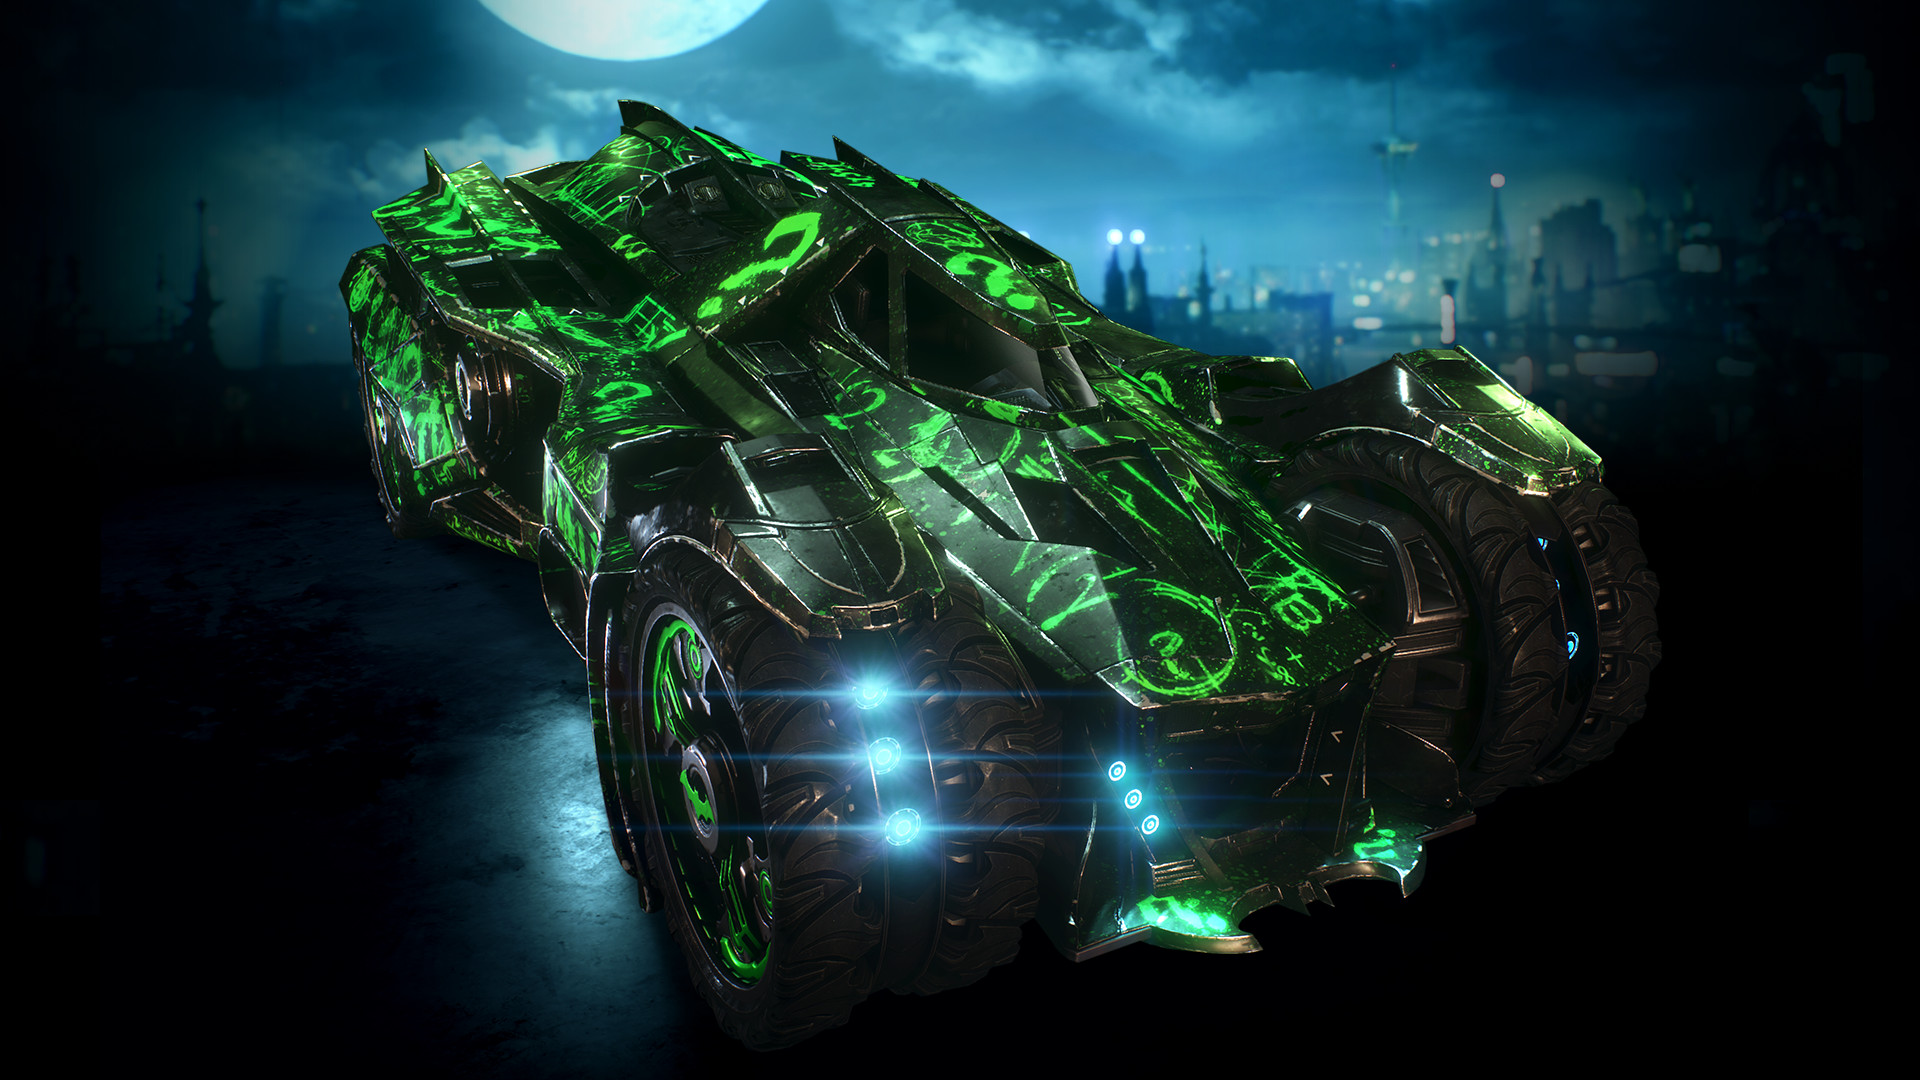 Batman™: Arkham Knight - Riddler Themed Batmobile Skin on Steam